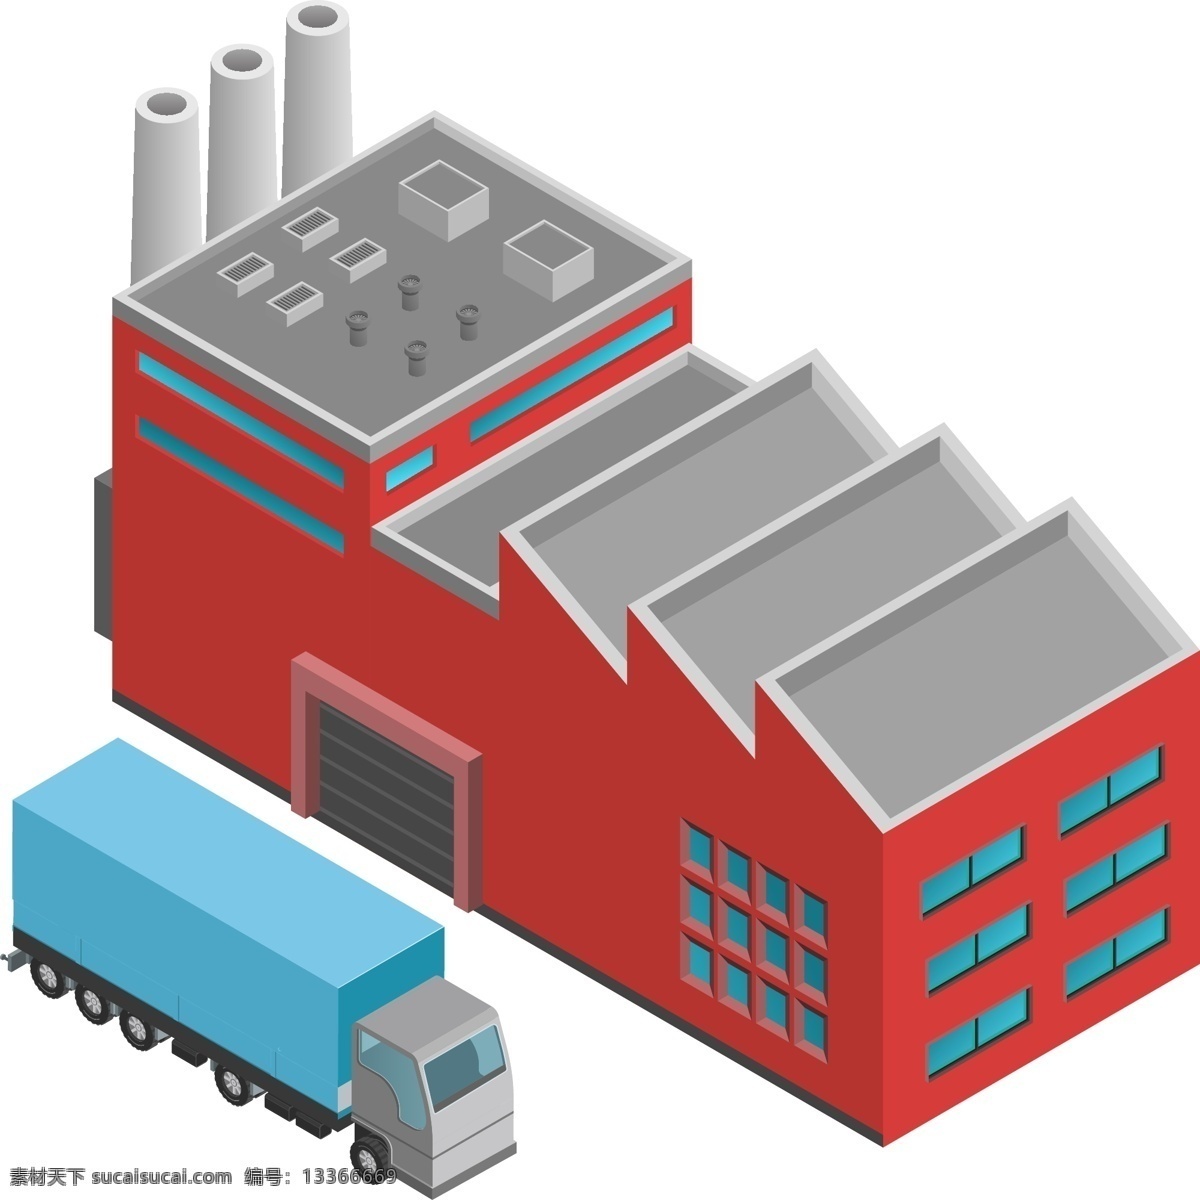 简约 风格 物流运输 元素 商用 物流 运输 货车 仓库 仓储 快递 货品